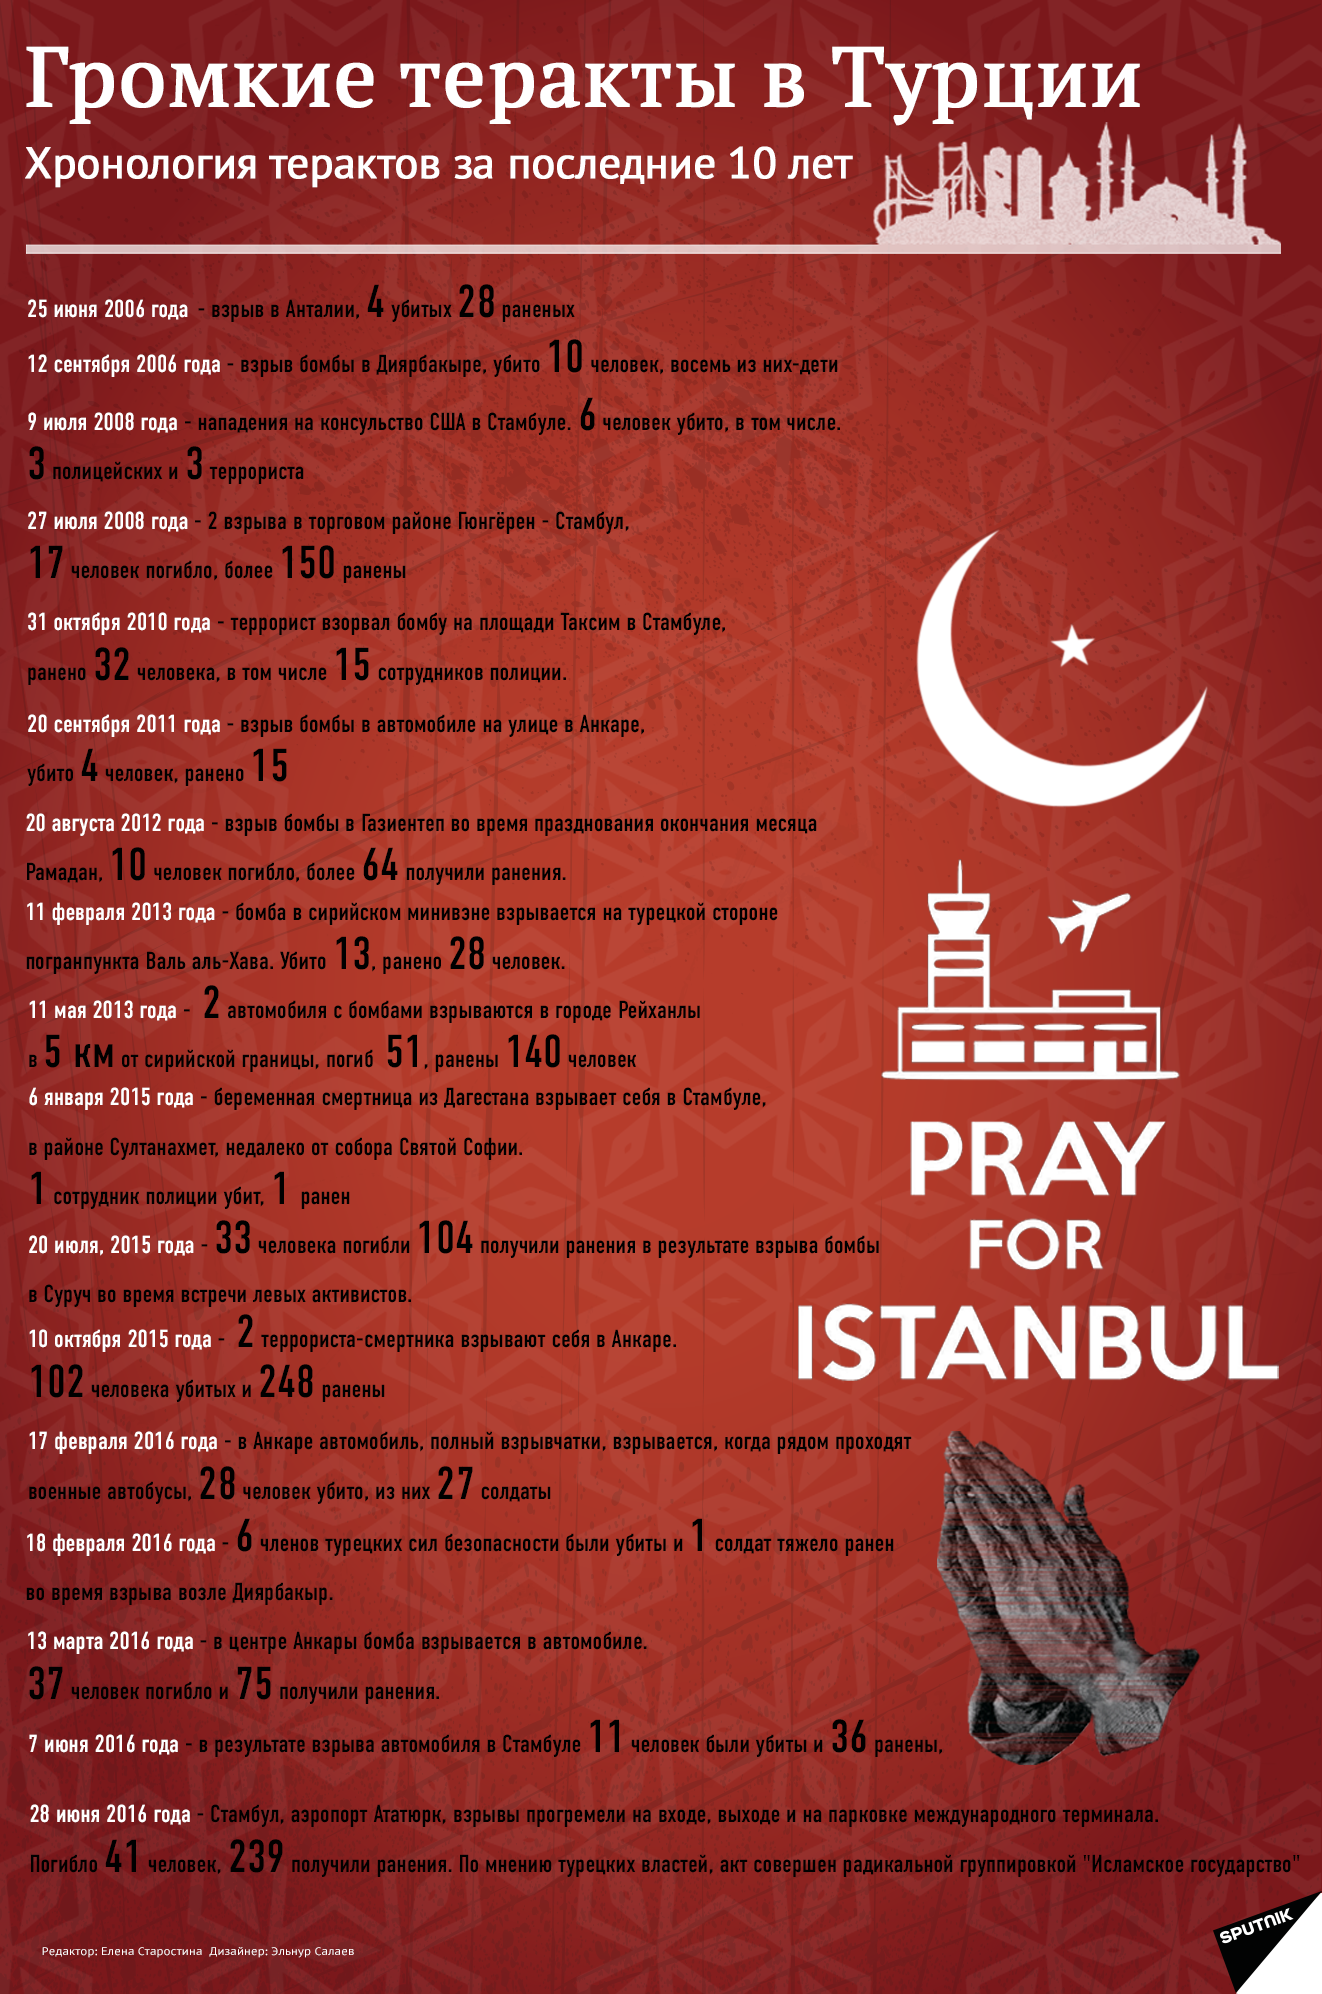 Громкие теракты в Турции за последние 10 лет - Sputnik Азербайджан